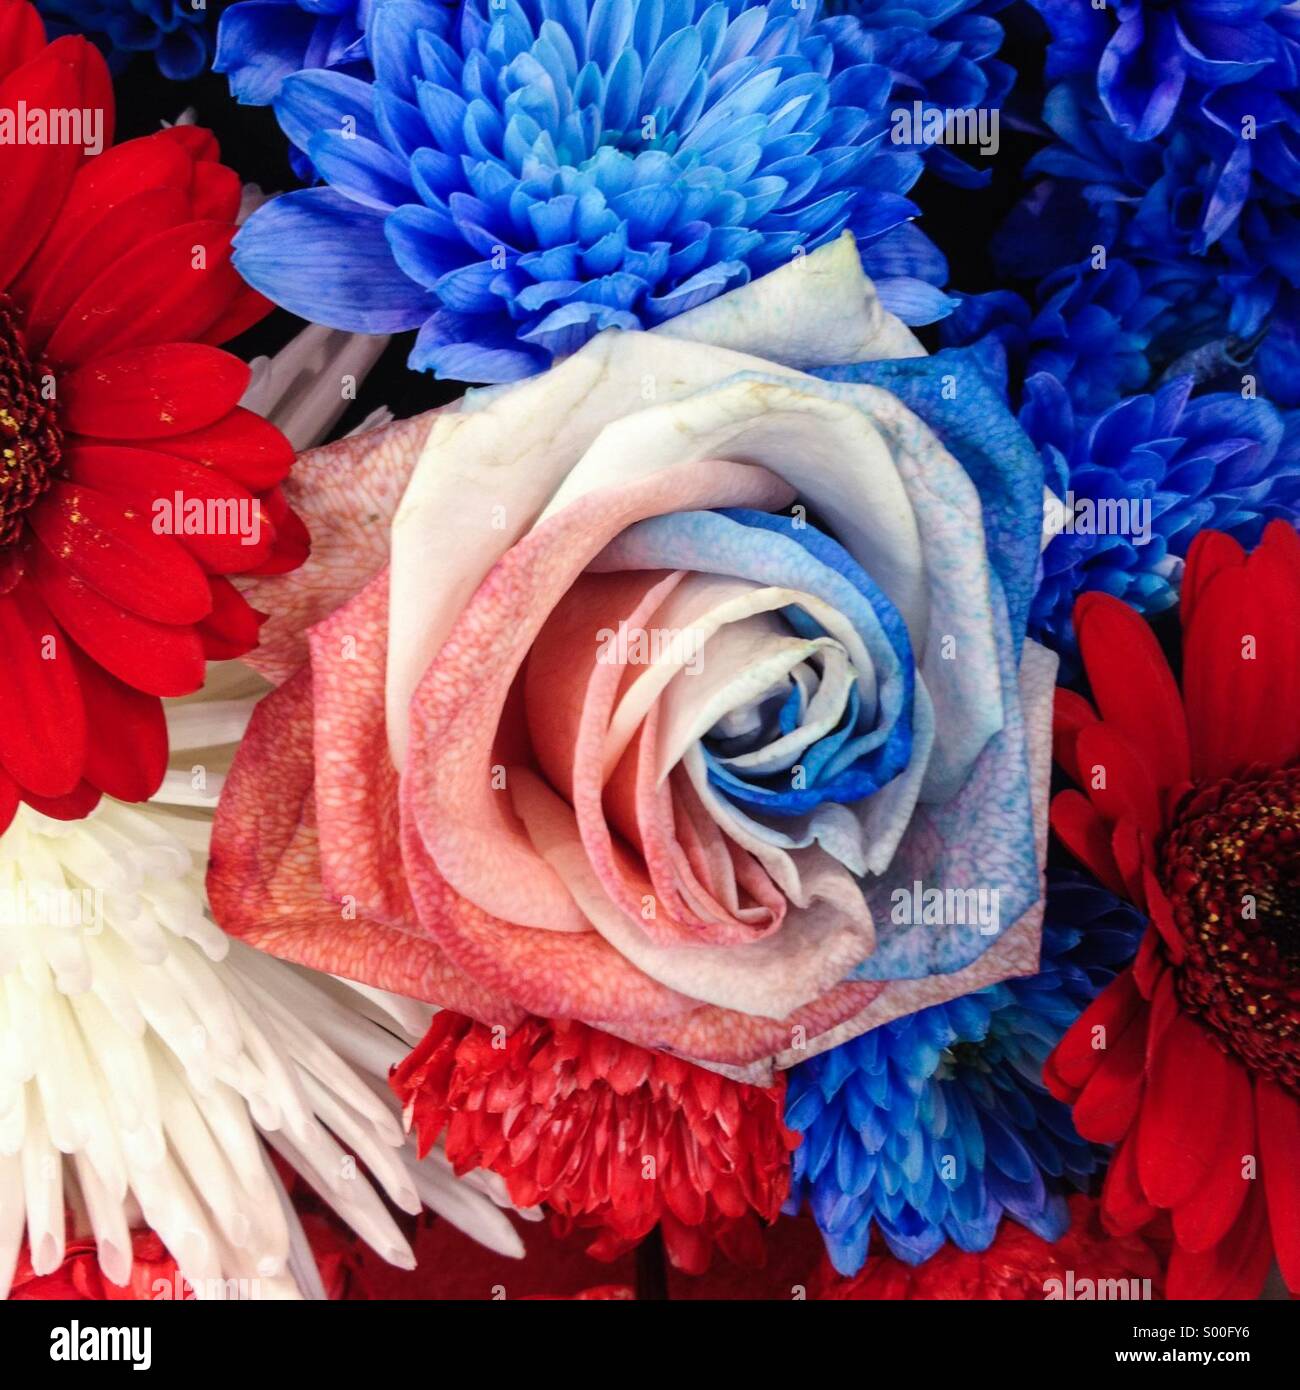 Rouge, blanc et bleu fleur rose Photo Stock - Alamy